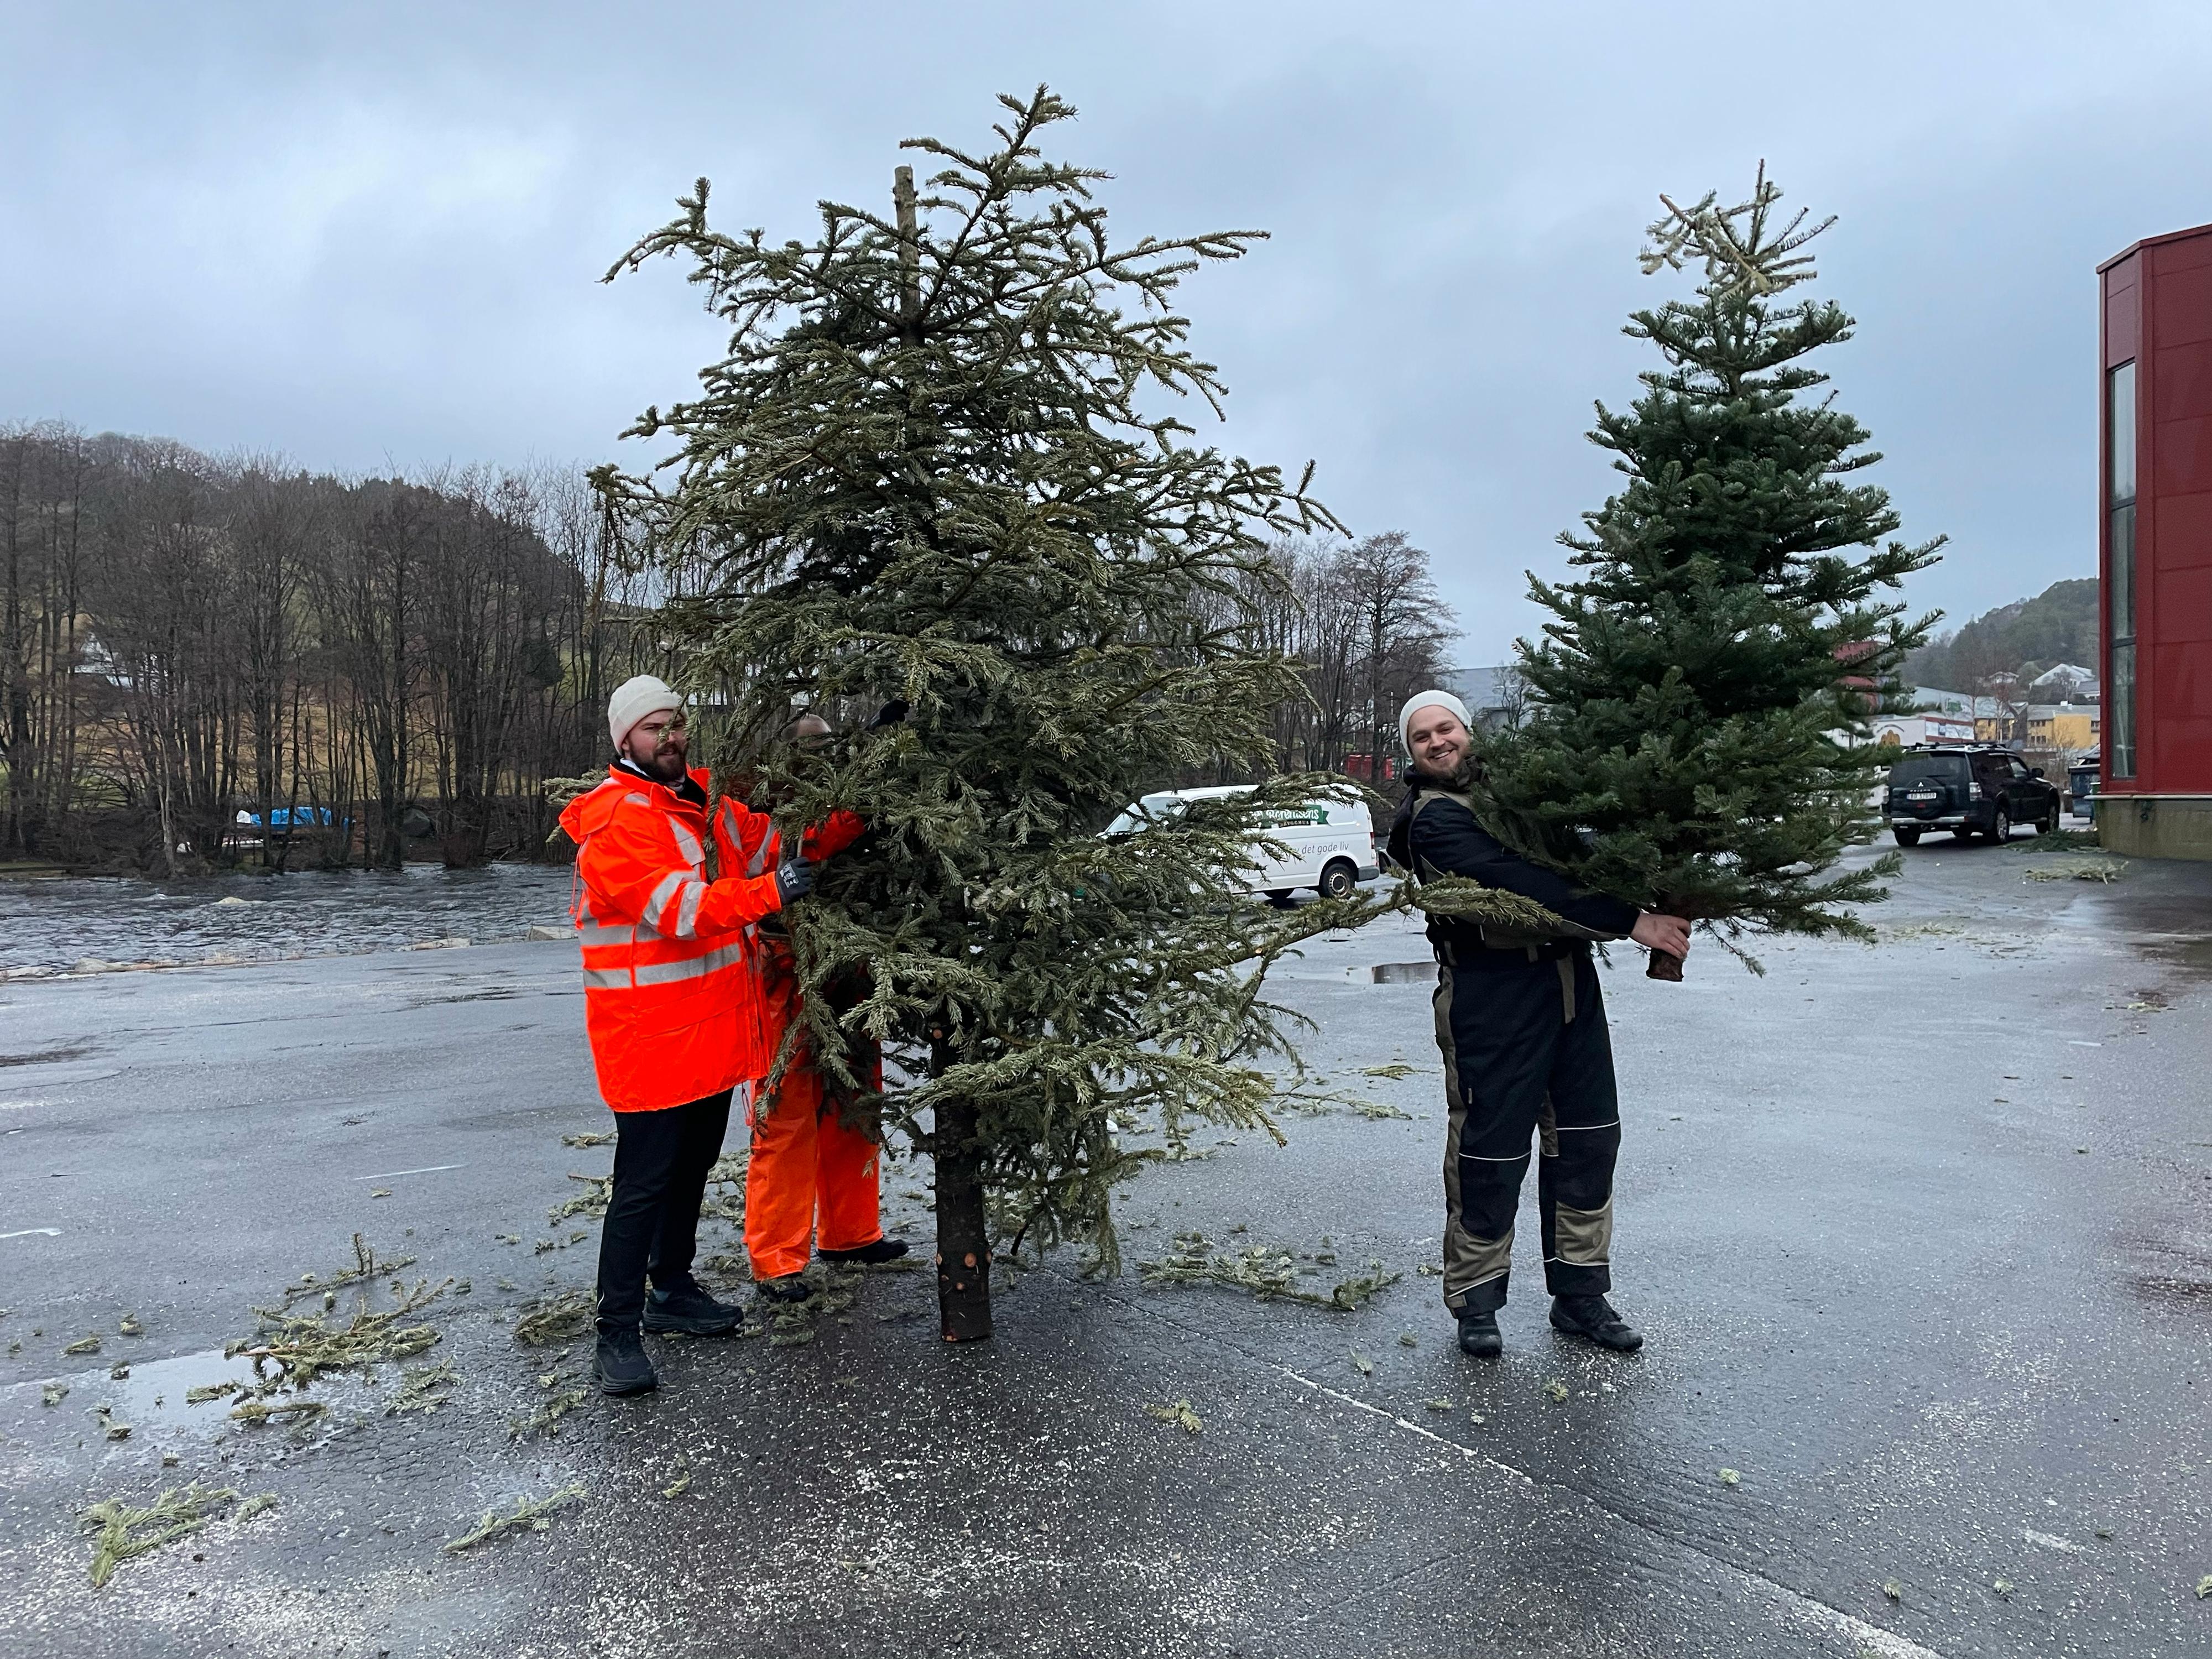 SAMLER INN: (Fra v.) Johan Monsen og Fred Berentsen samler inn juletrær til produksjonen.